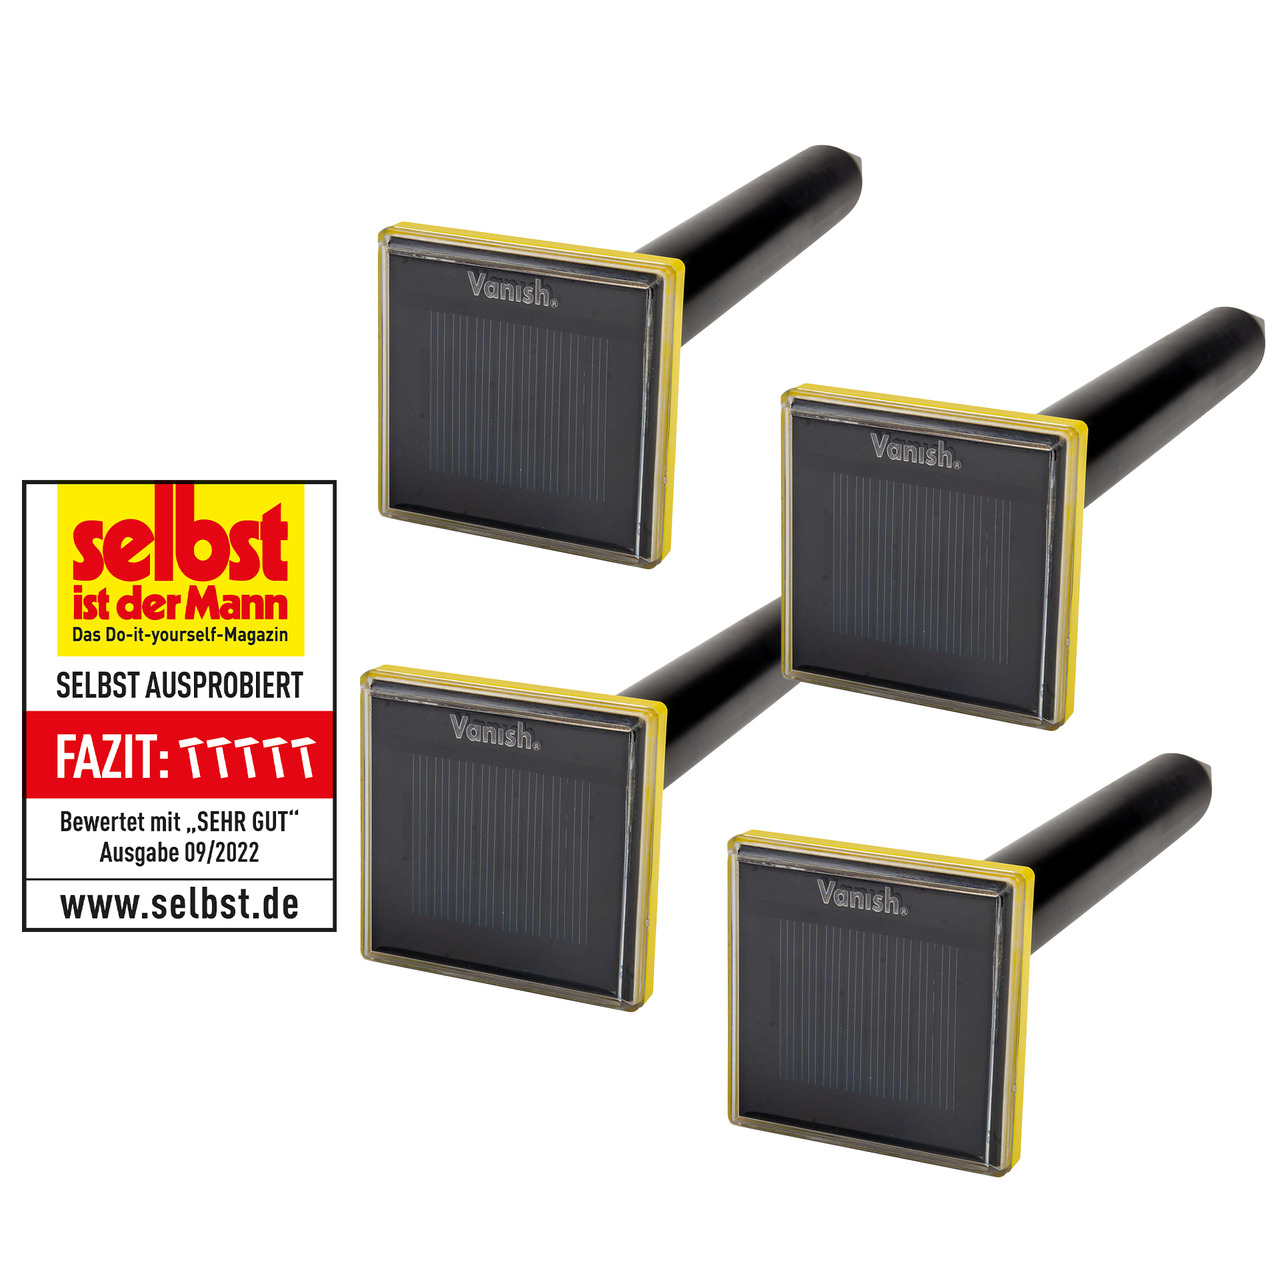 Vanish 4er-Spar-Set Solar-Maulwurfvertreiber MVT-2- Schallimpuls- Solarbetrieb- IP65 unter Freizeit- und Outdoortechnik